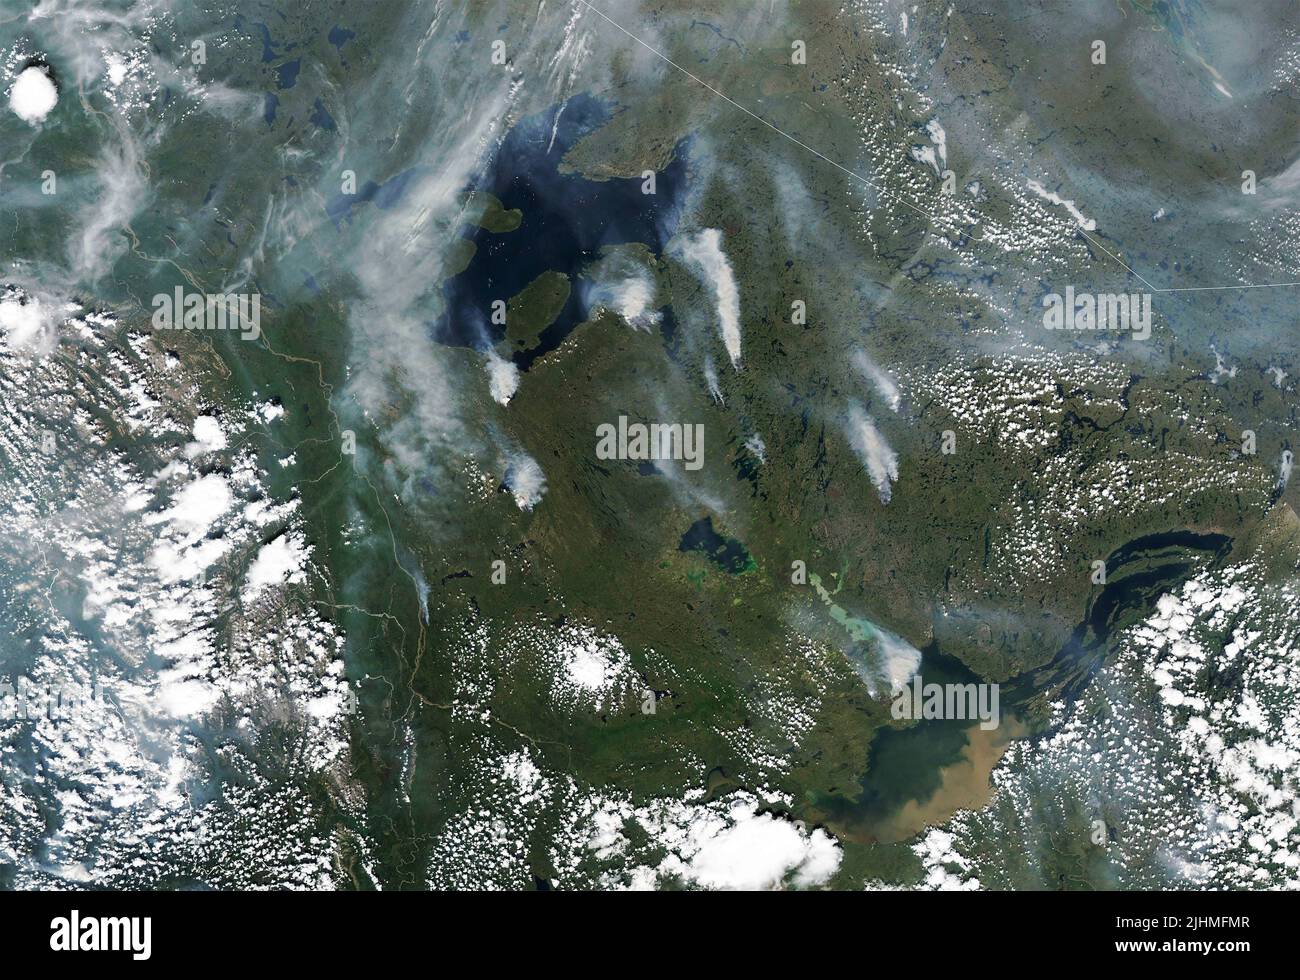 Image satellite montrant la fumée des feux de forêt qui brûlent au Yukon et dans les Territoires du Nord-Ouest du Canada, détectée par le satellite Landsat 8 de la NASA, 6 juillet 2022, dans l'orbite terrestre. Selon le gouvernement canadien, 136 incendies ont brûlé au Yukon et 65 dans les Territoires du Nord-Ouest. Banque D'Images